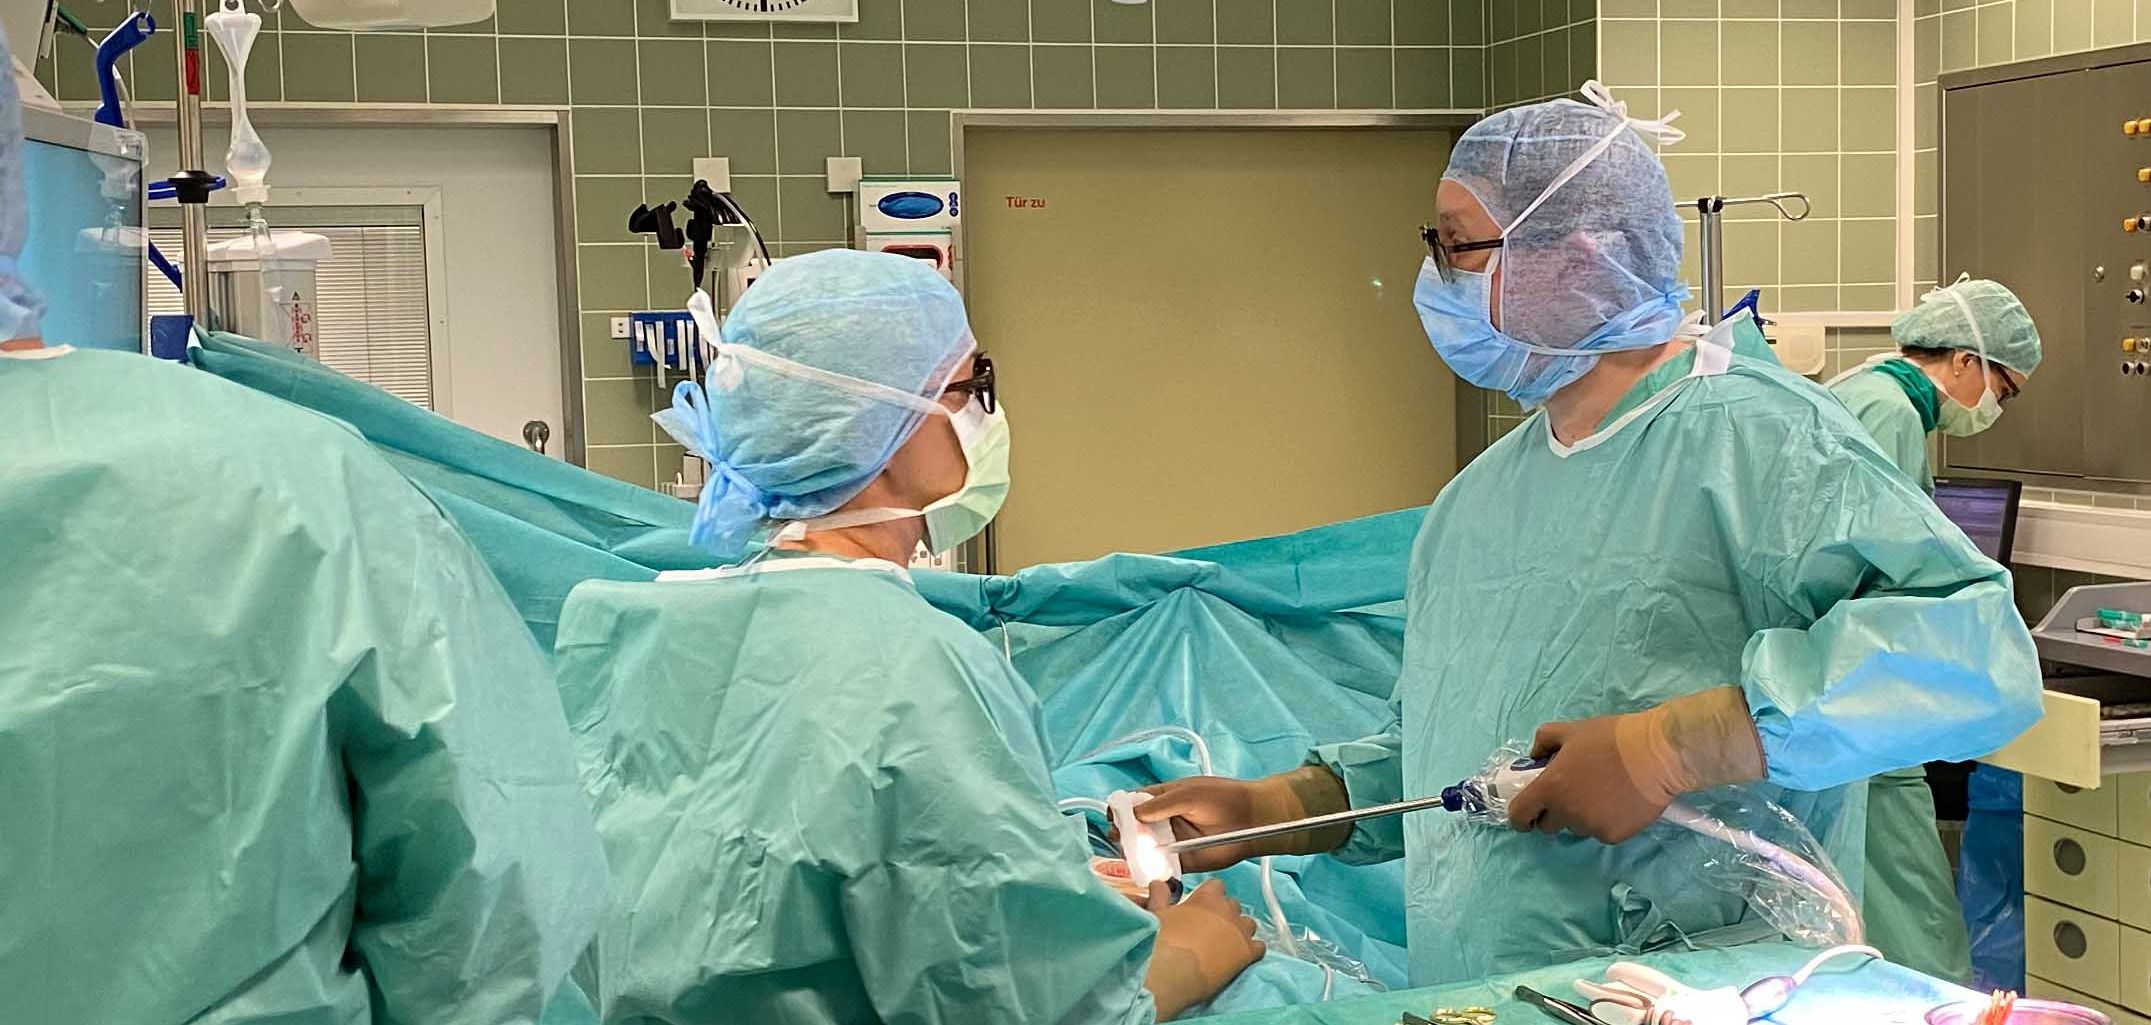 Chirurgie im Malteser Krankenhaus in Flensburg